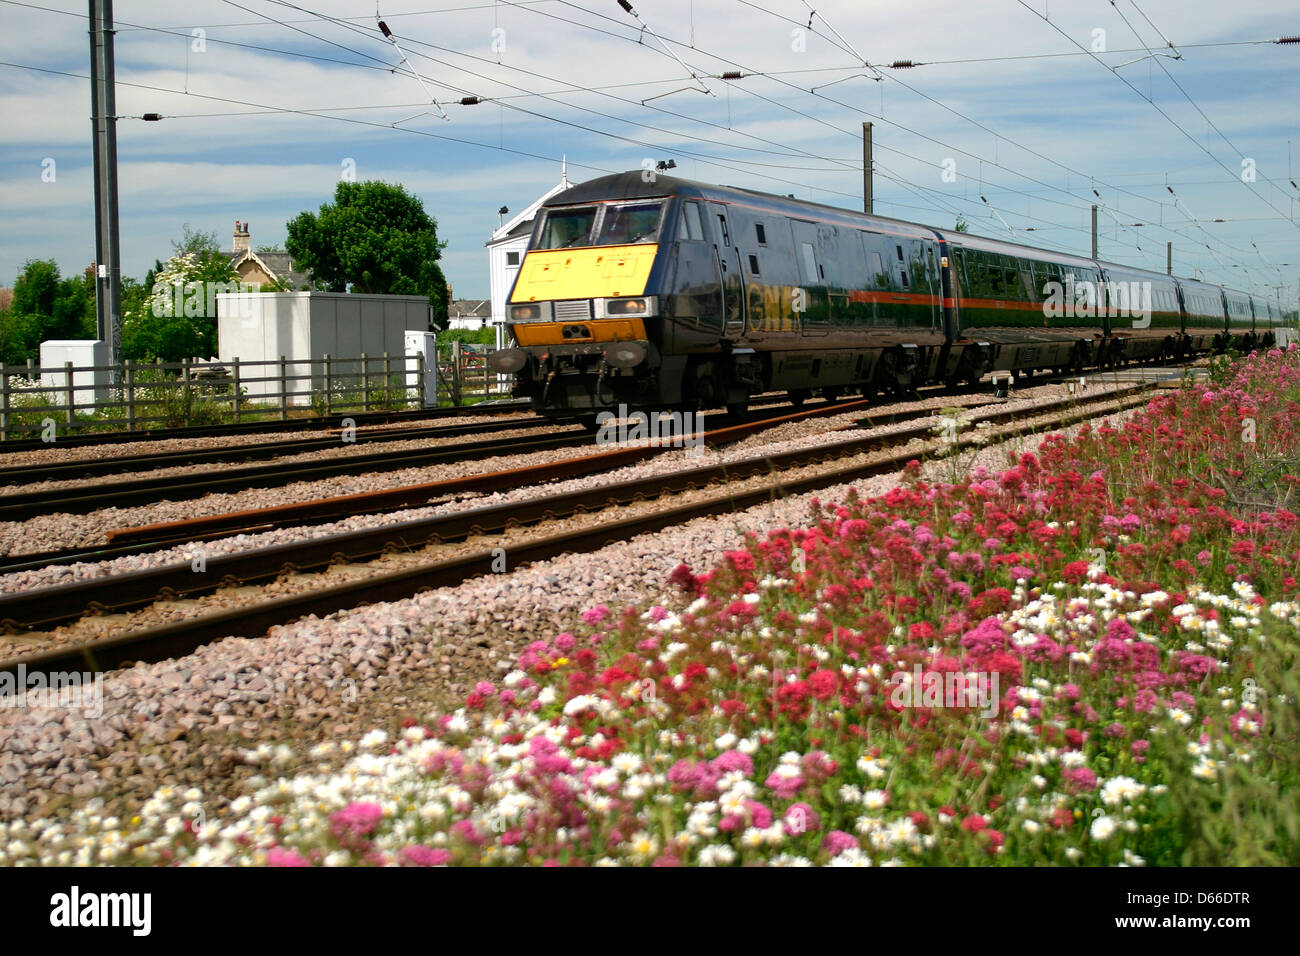 GNER, classe 82 DVT train électrique, East Coast Main Line, Helpston crossing, Peterborough, Cambridgeshire, Angleterre Banque D'Images